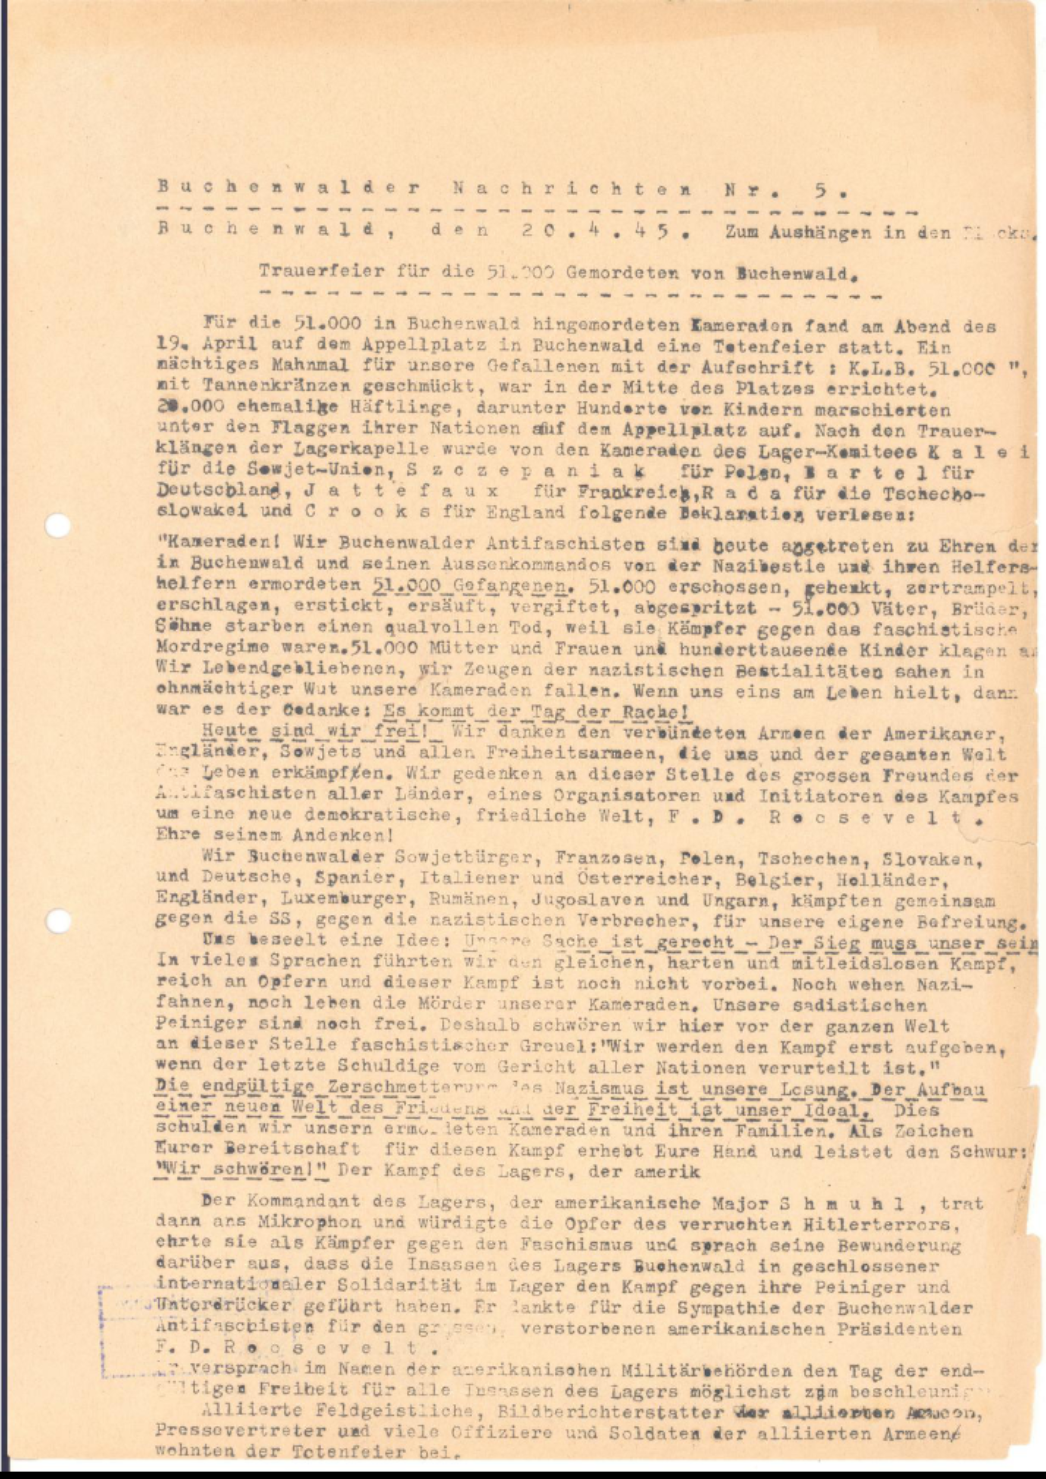 Eng mit Schreibmaschine bedruckte Textseite unter dem Titel "Buchenwalder Nachrichten Nr. 5. Trauerfeier für die 51000 Gemordeten von Buchenwald"